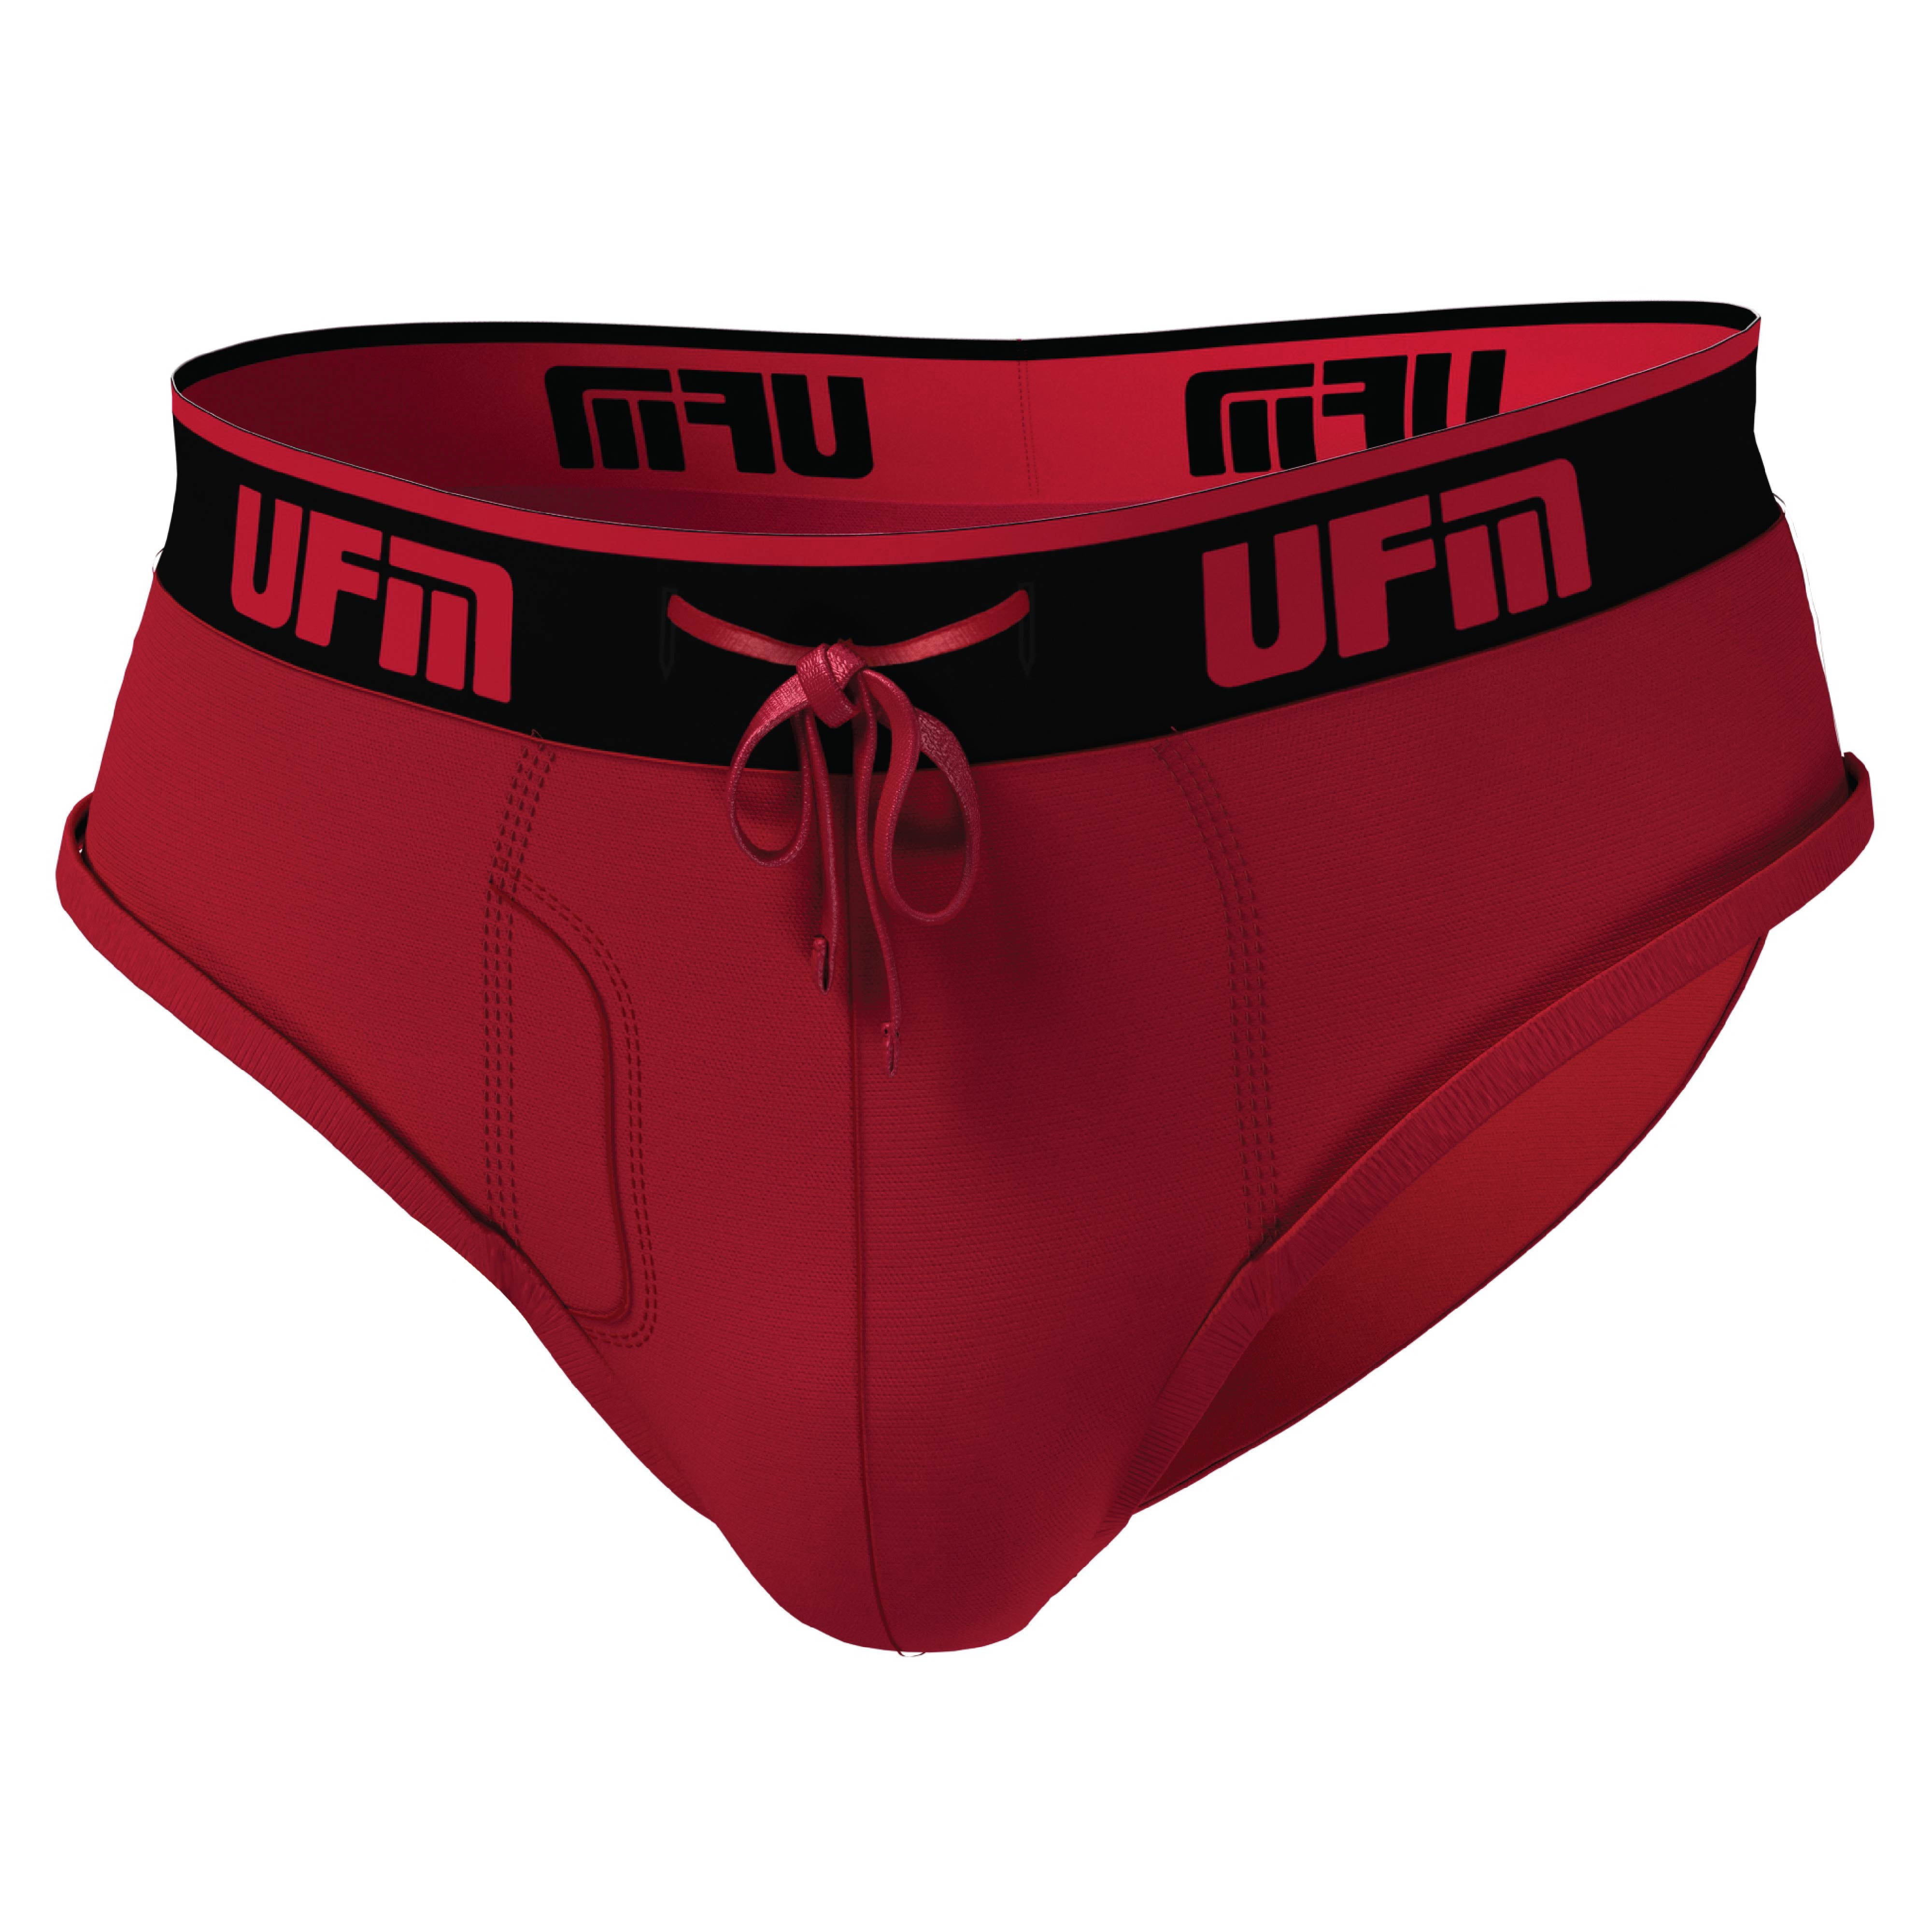 UFM Mens Underwear, Polyester-Spandex Mens Briefs, Regular and Adjustable  Support Pouch Men Underwear, 40-42 Waist, Red